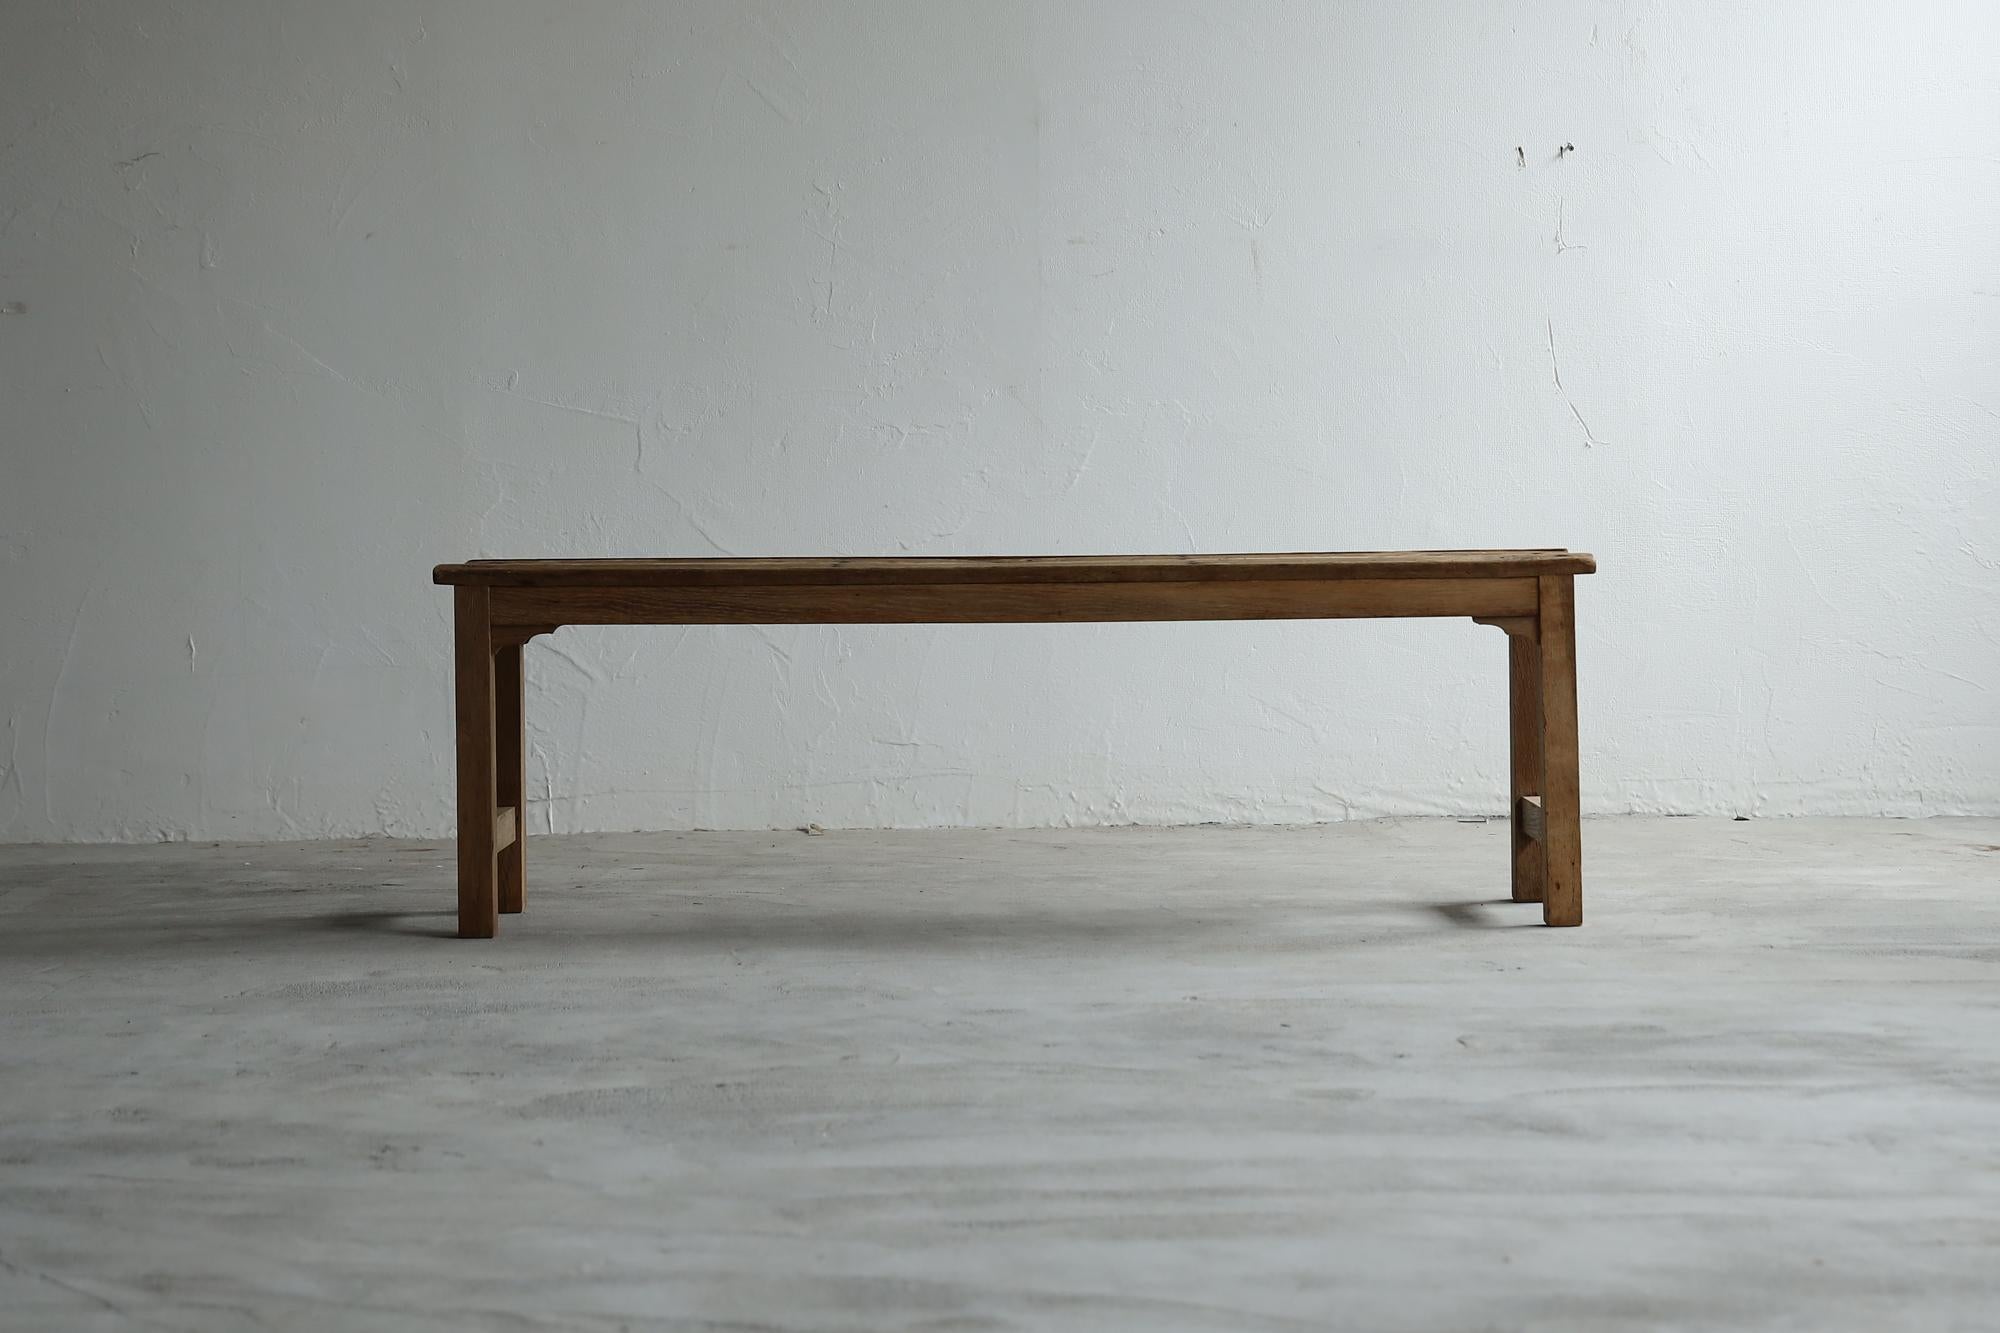 Chaise japonaise.
Il date de la période Taisho.
Il était utilisé dans les écoles à l'époque.

Les matériaux sont des bois de châtaignier et de chêne de très bonne qualité.
Ils sont rustiques et de bon goût, rappelant le monde du 